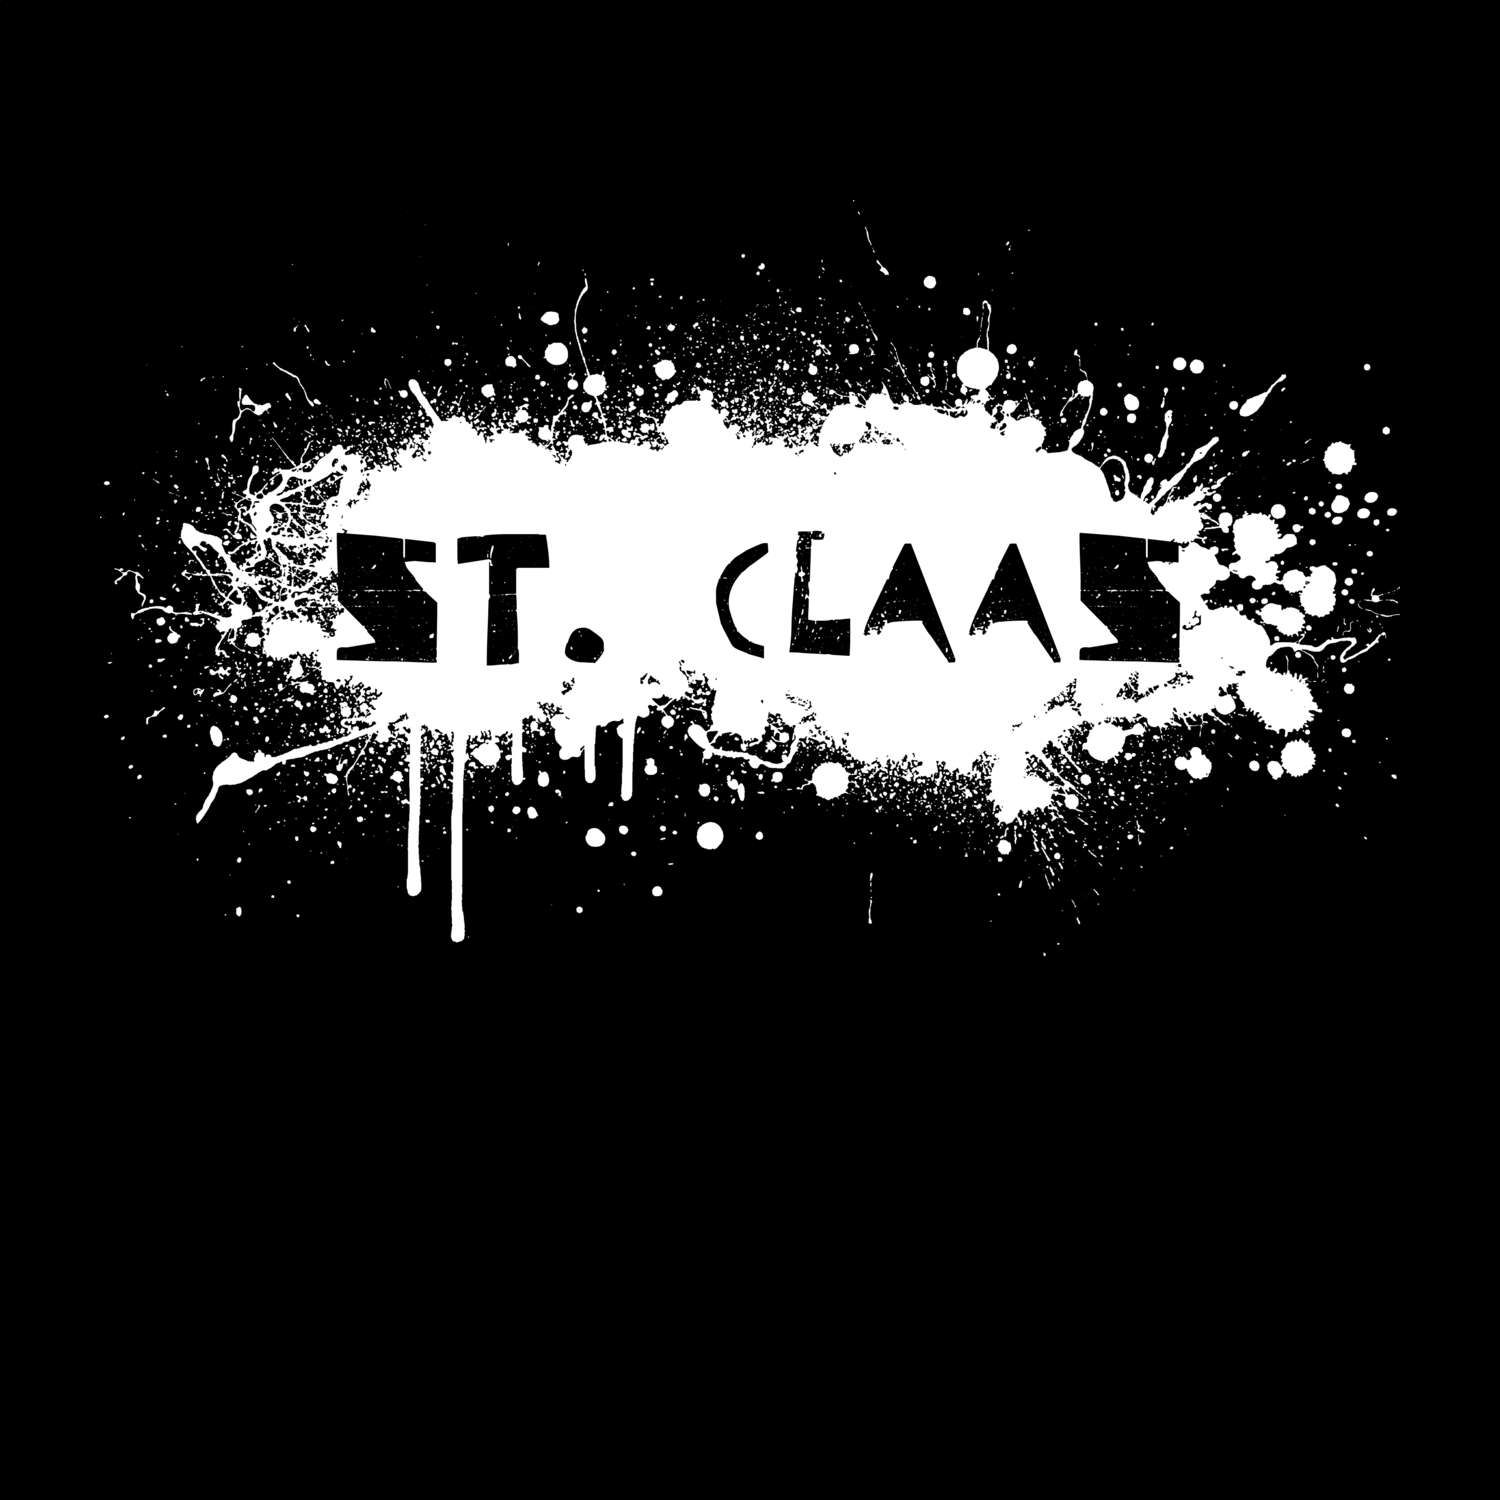 St. Claas T-Shirt »Paint Splash Punk«